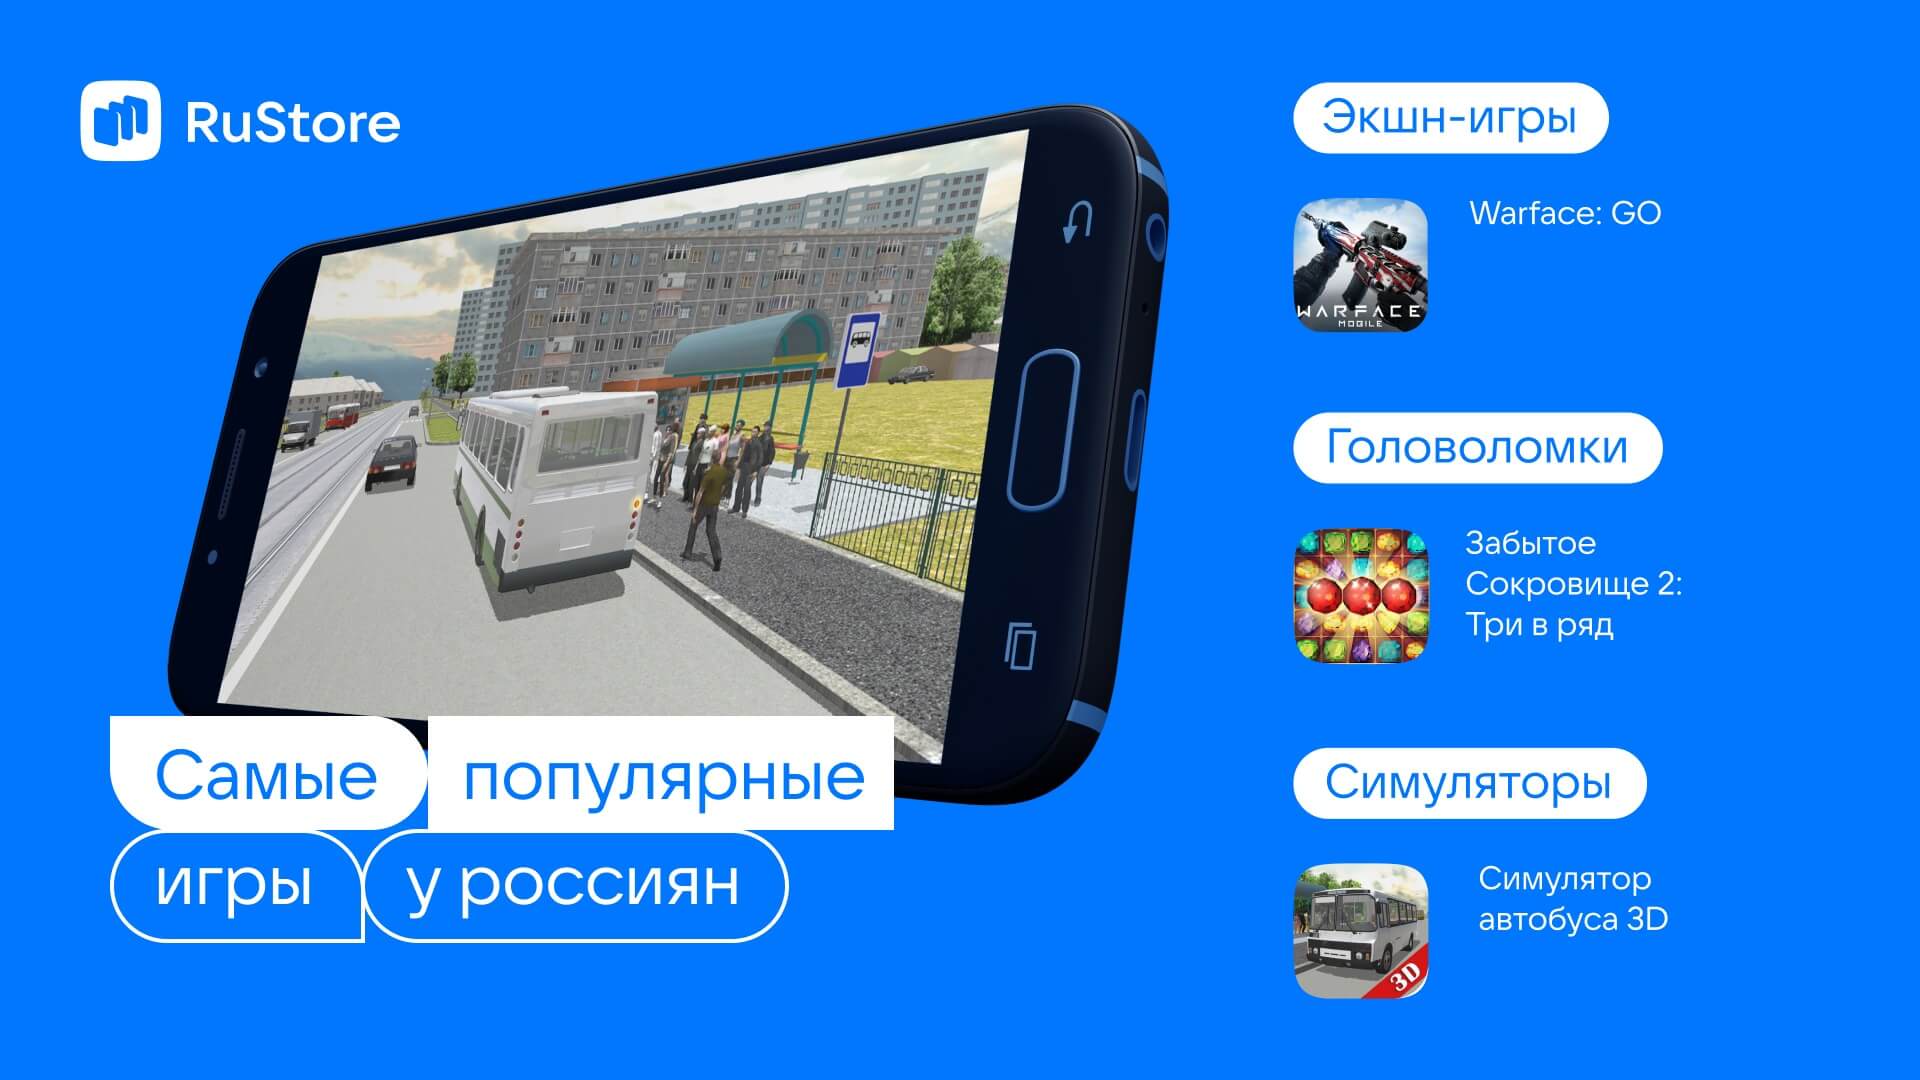 VK / RuStore Выяснил, В Какие Игры Играют Россияне